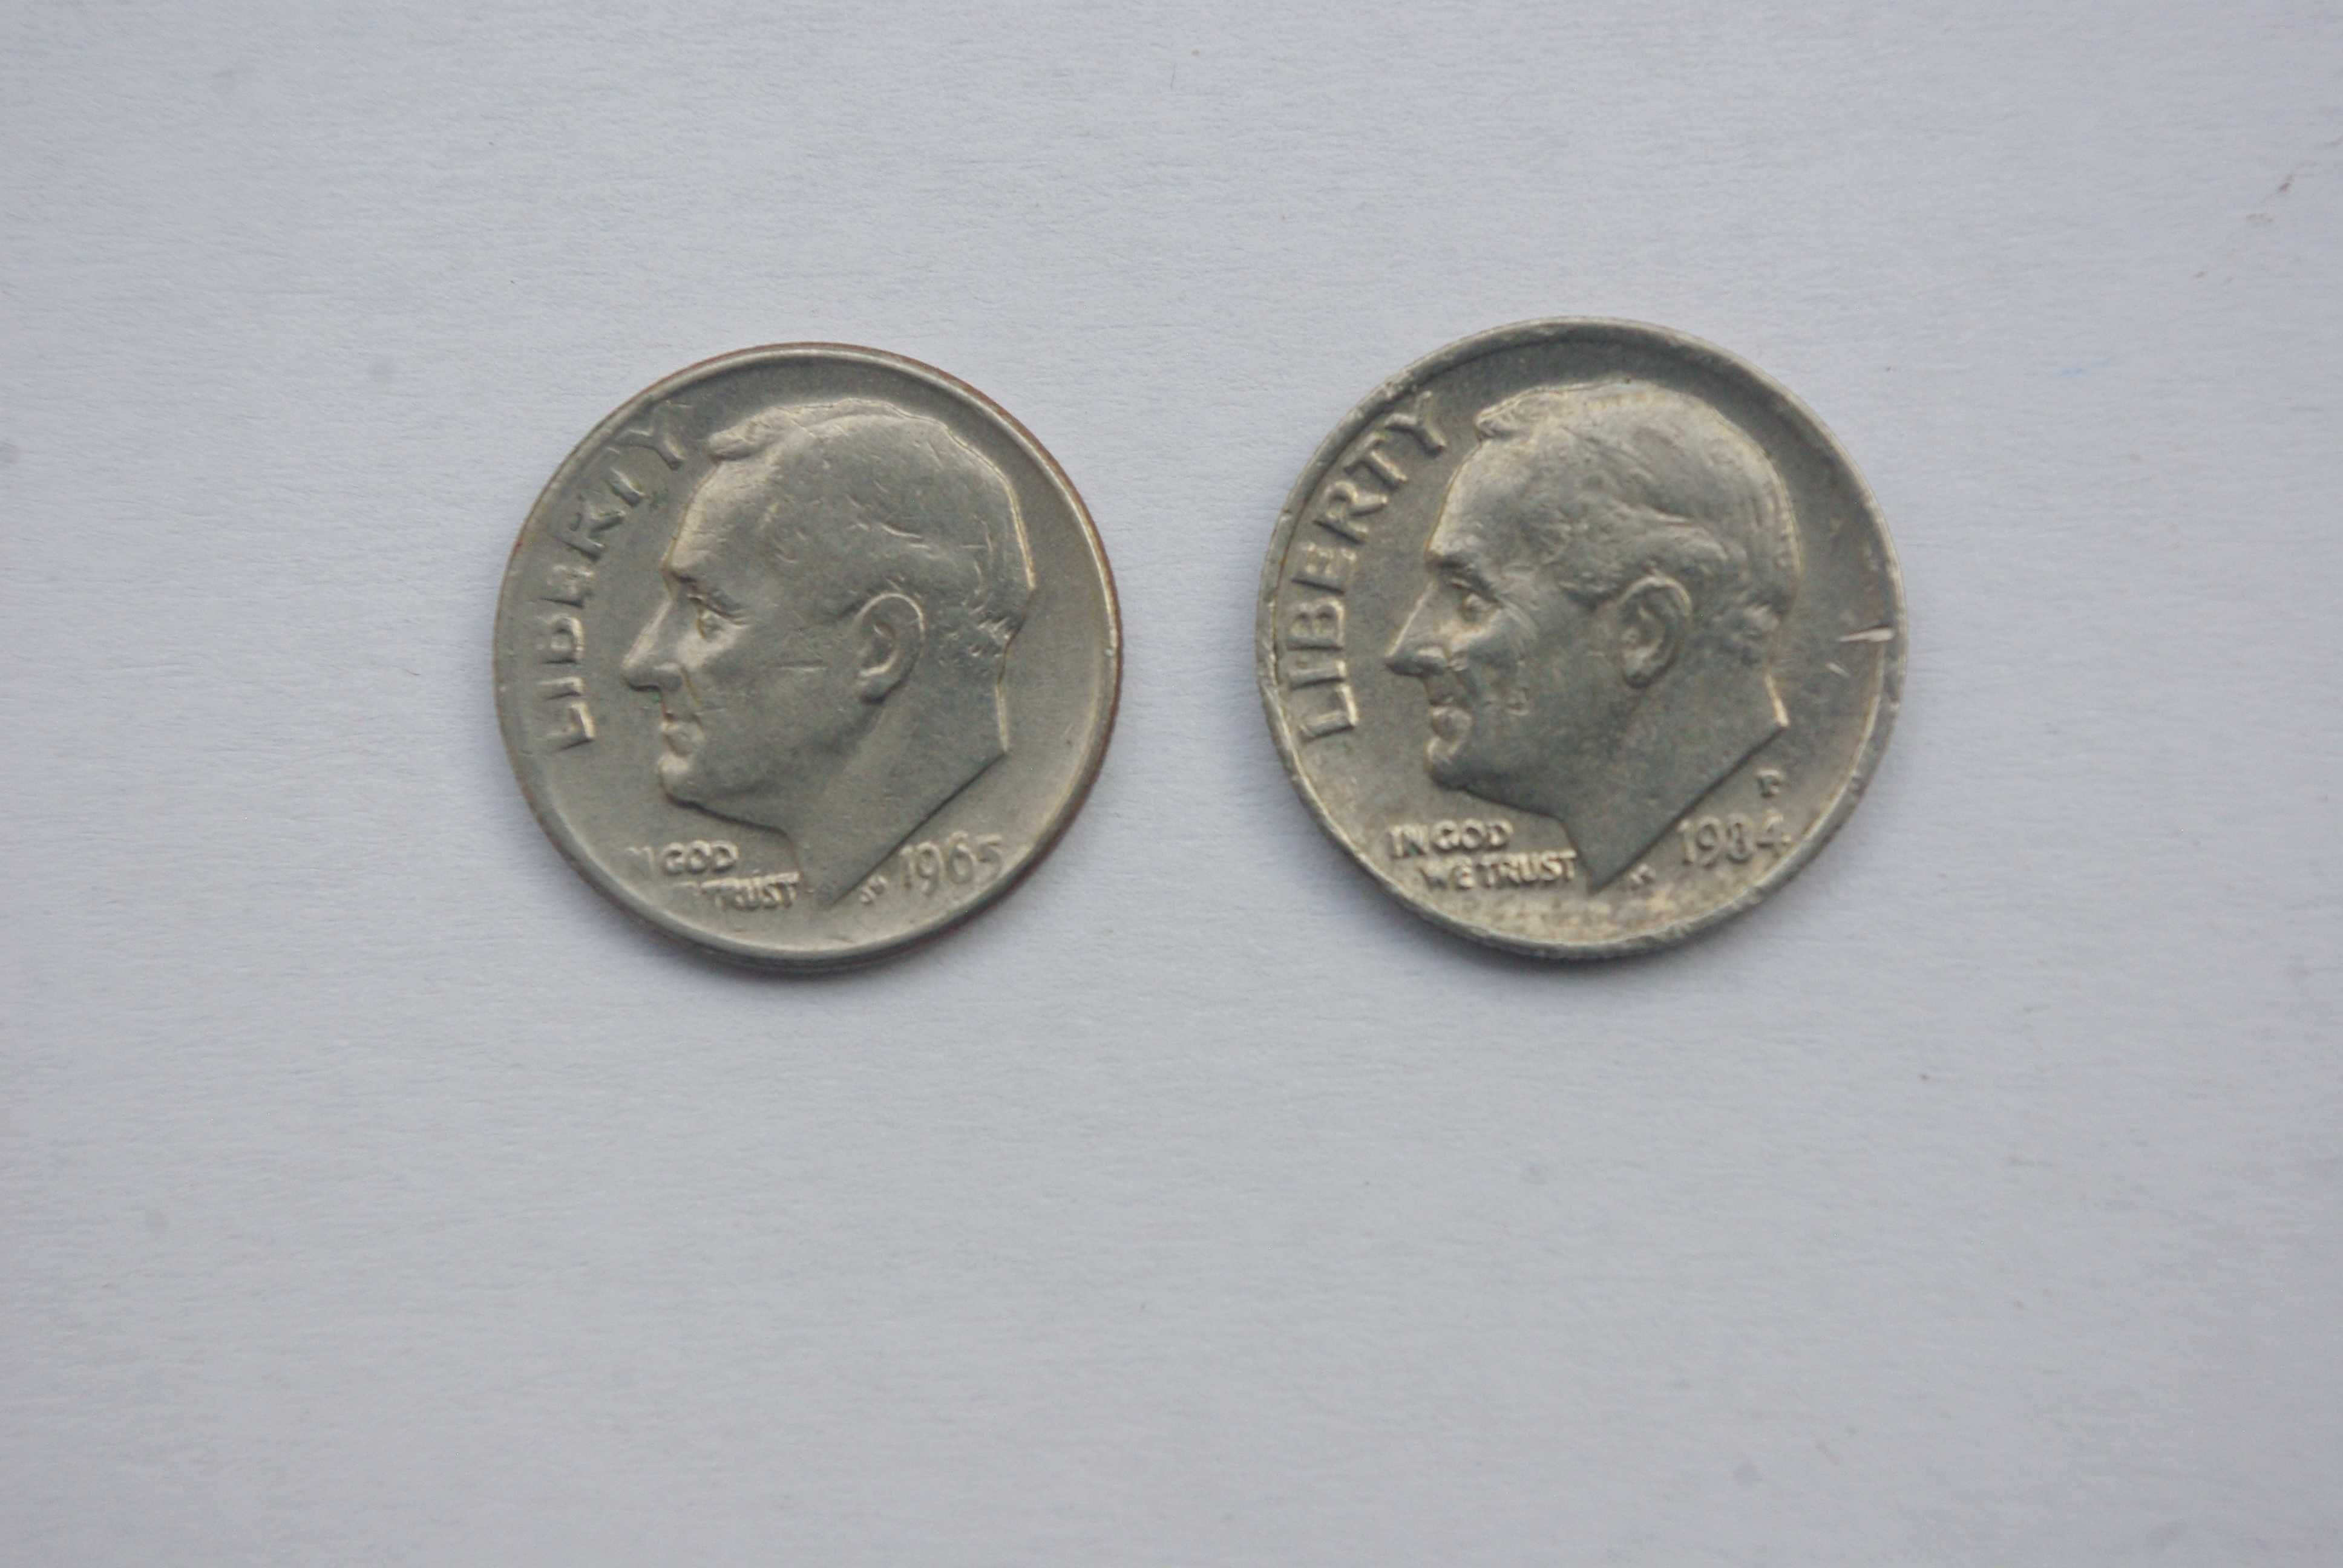 Colectie 14 bucati de 10 centi (dime) USA anii 1965 - 2007